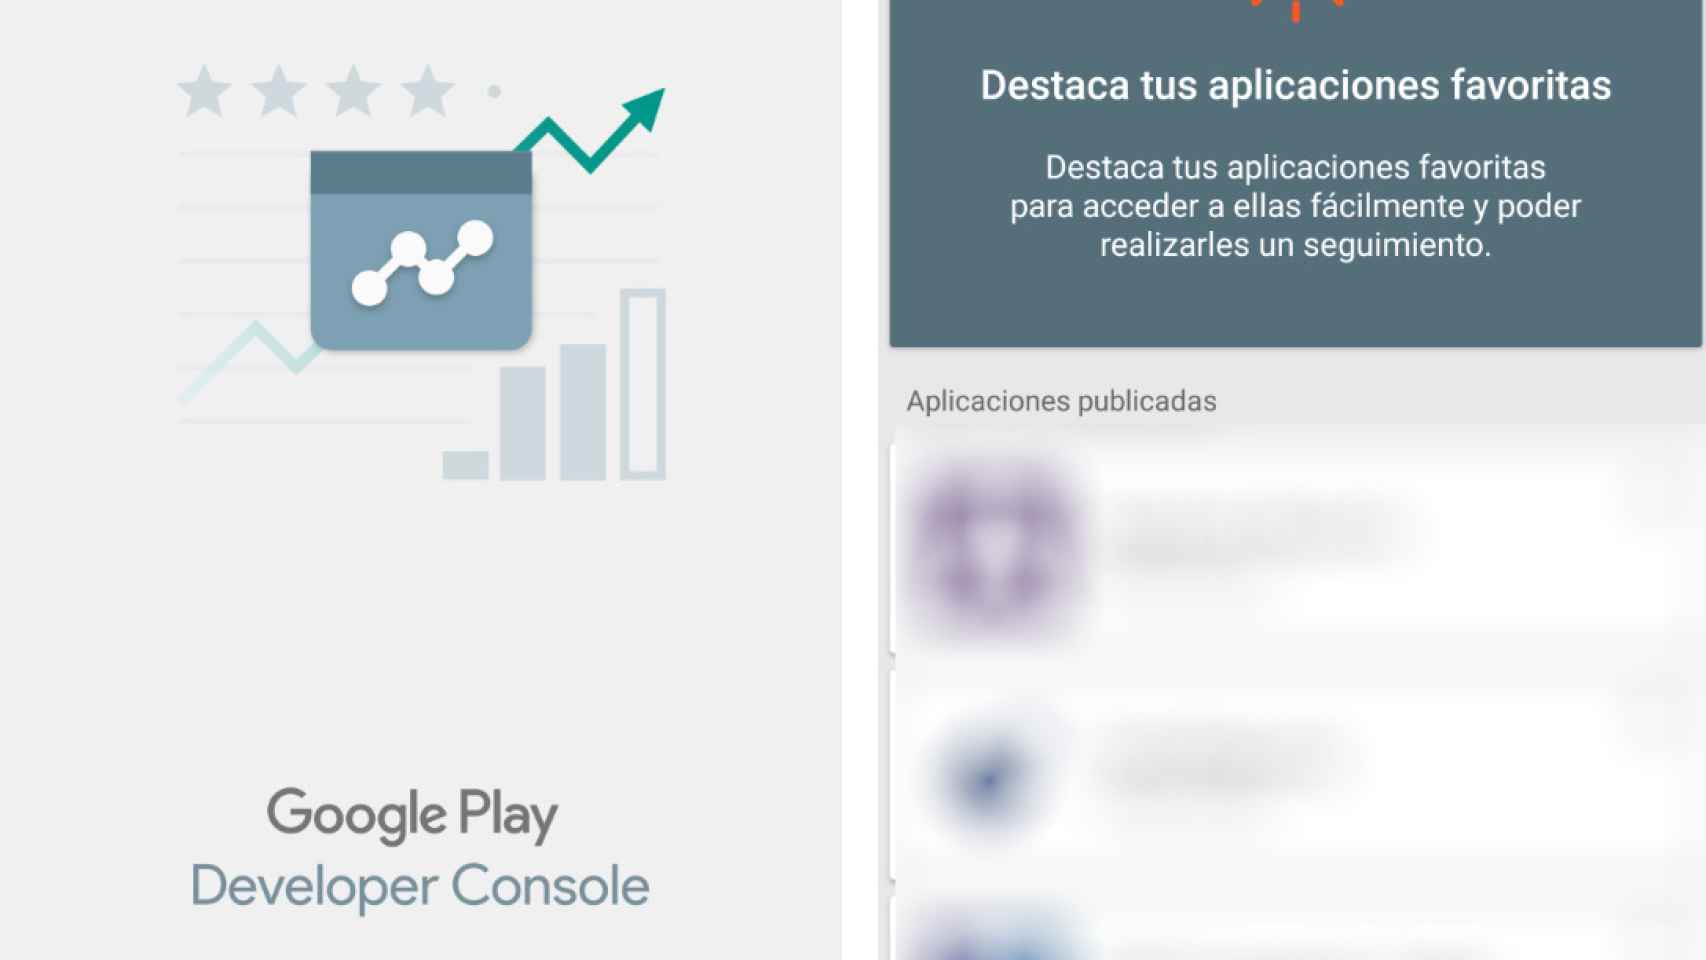 Google Play Developer Console, la nueva app imprescindible para desarrolladores